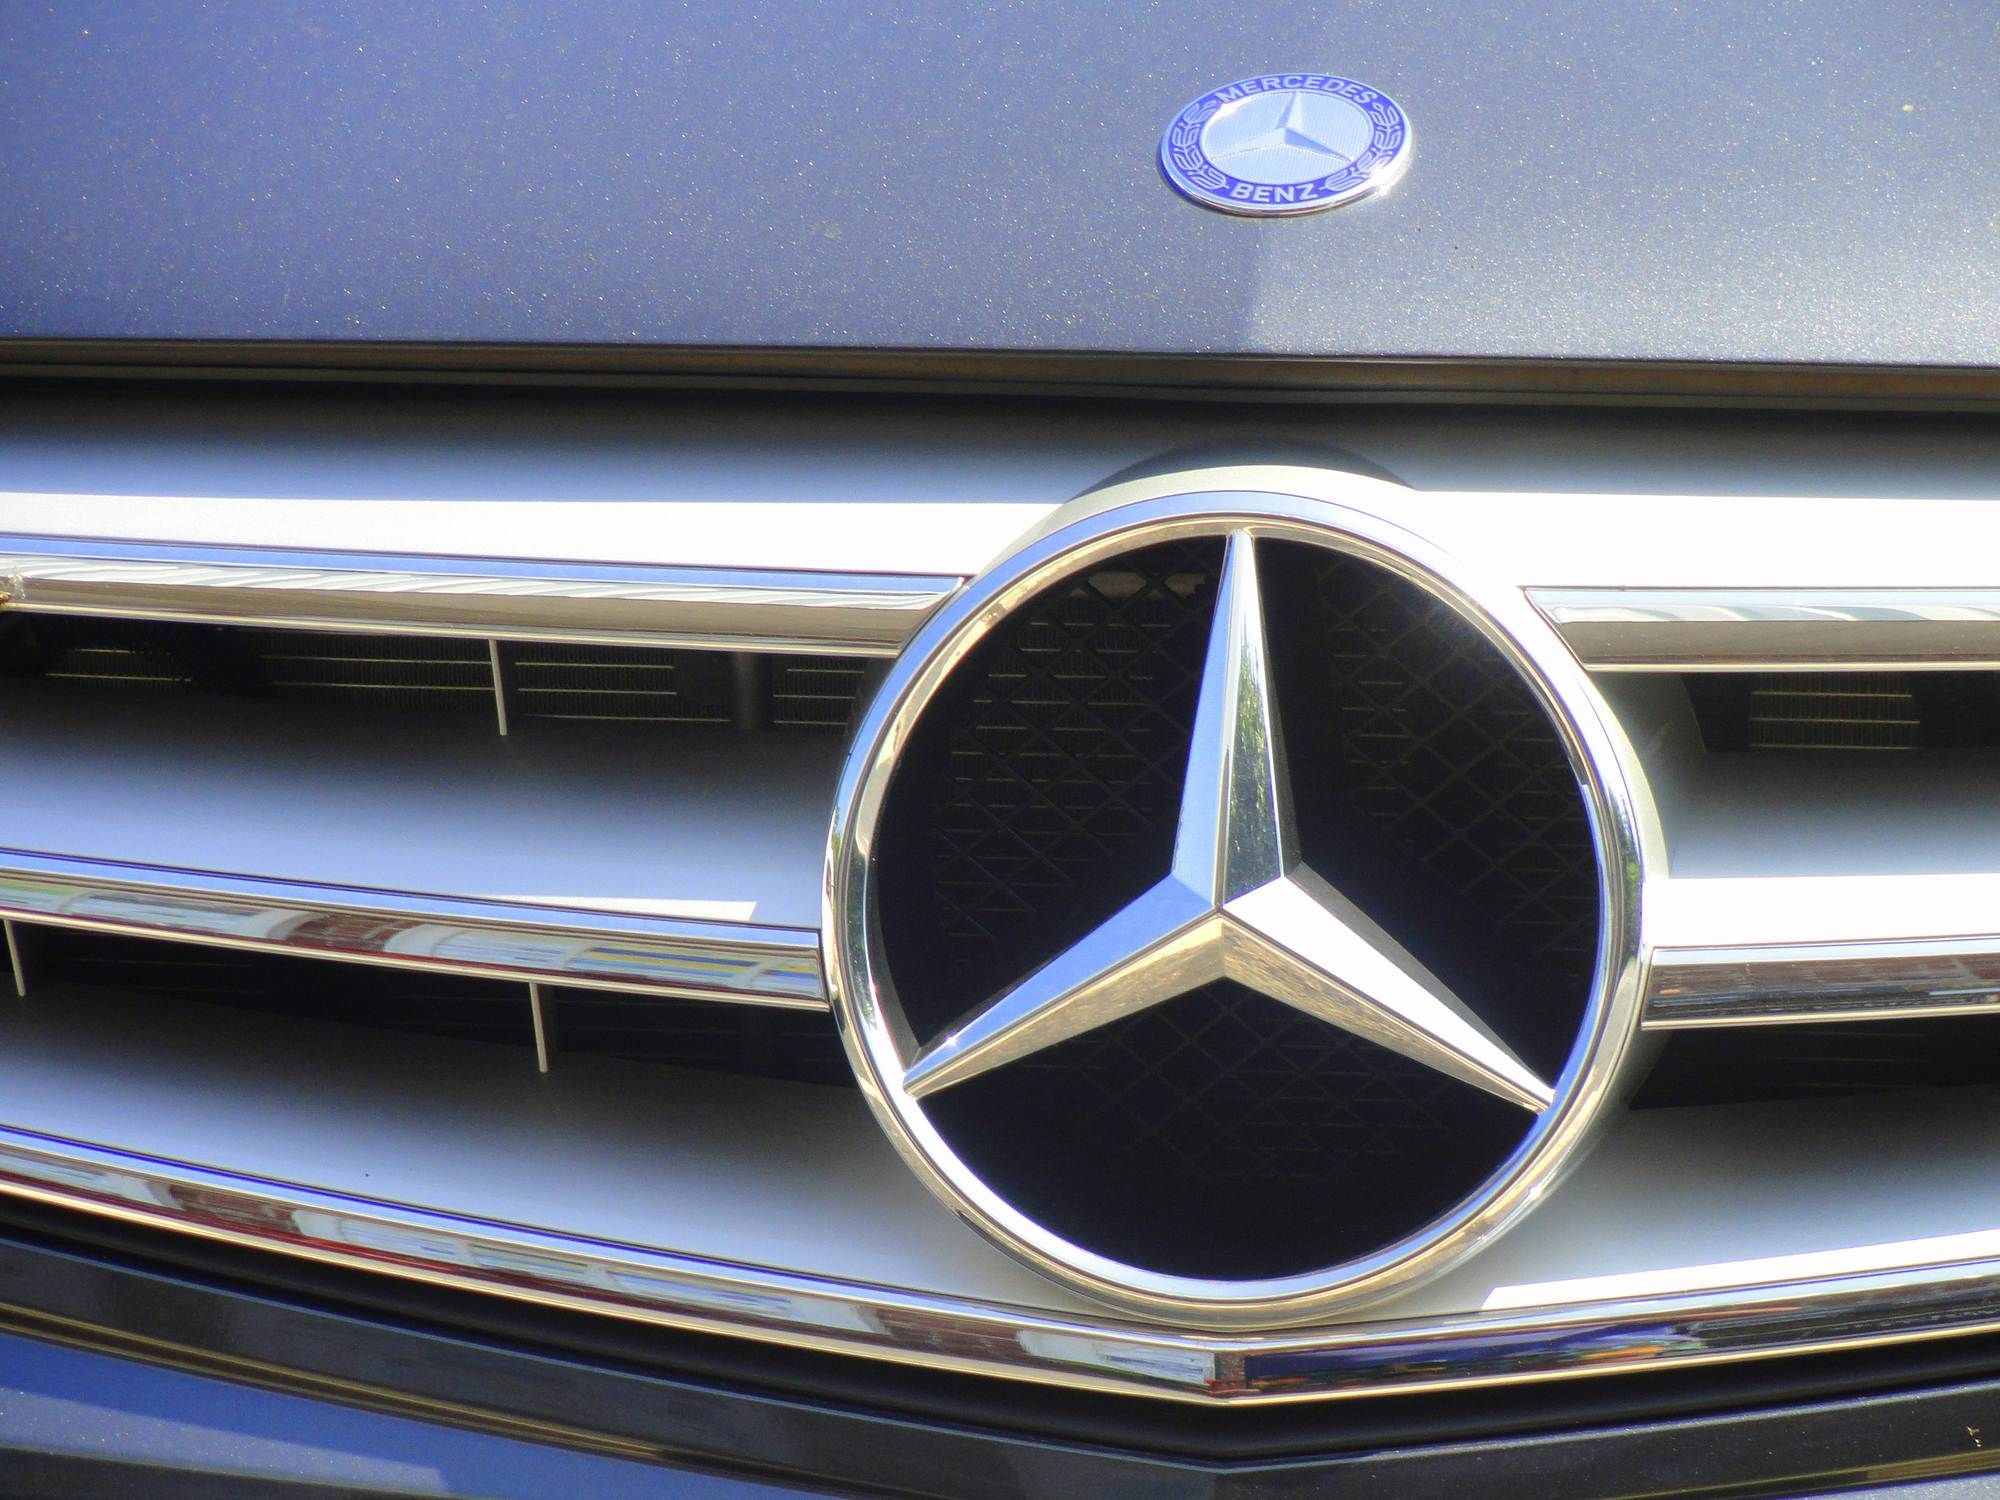 Mercedes Benz 401(k) class action alleges mismanagement